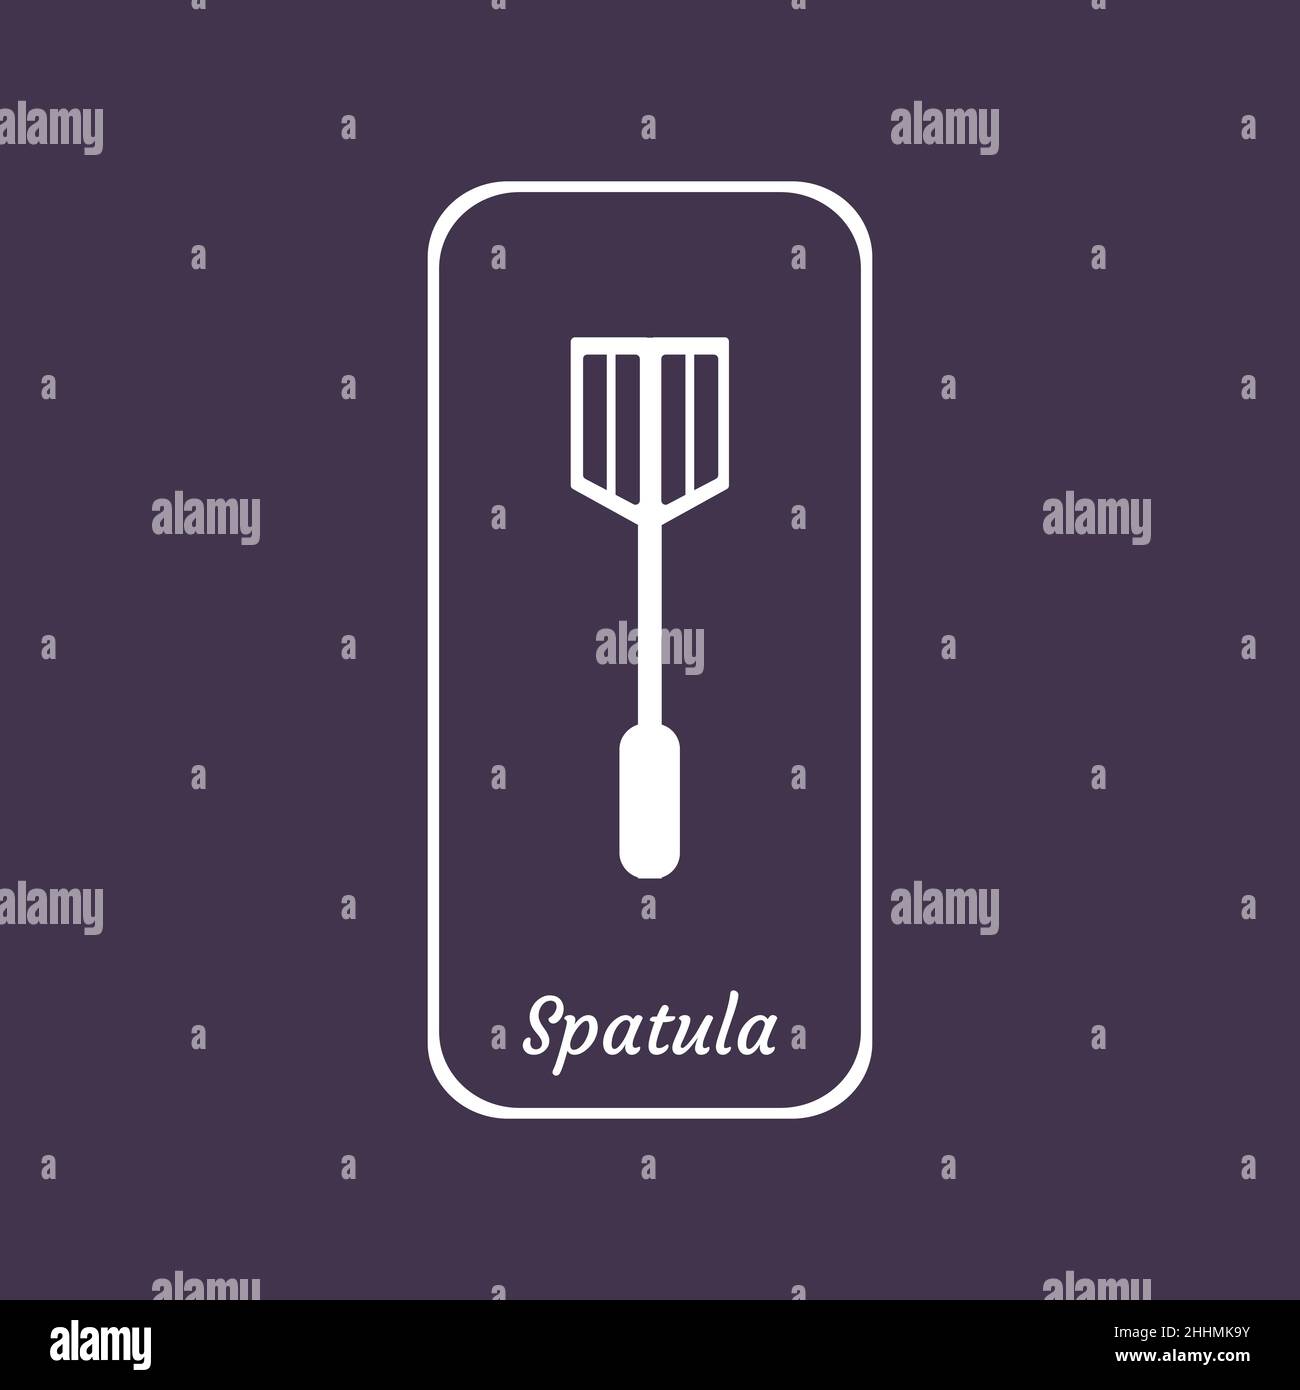 Spatula logo design inspiration template Stock Vector